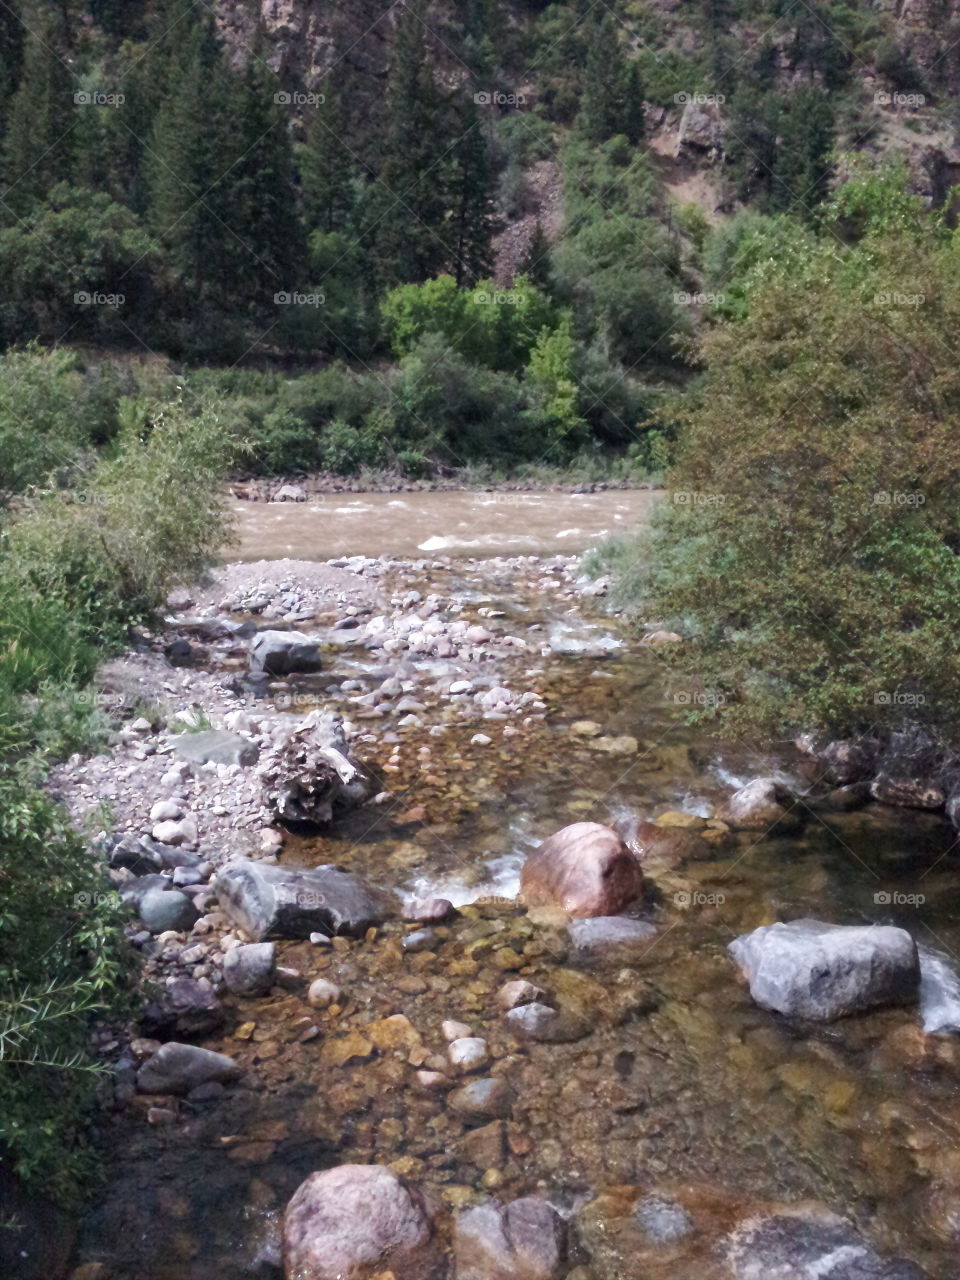 Colorado river. a creek combining with the Colorado river